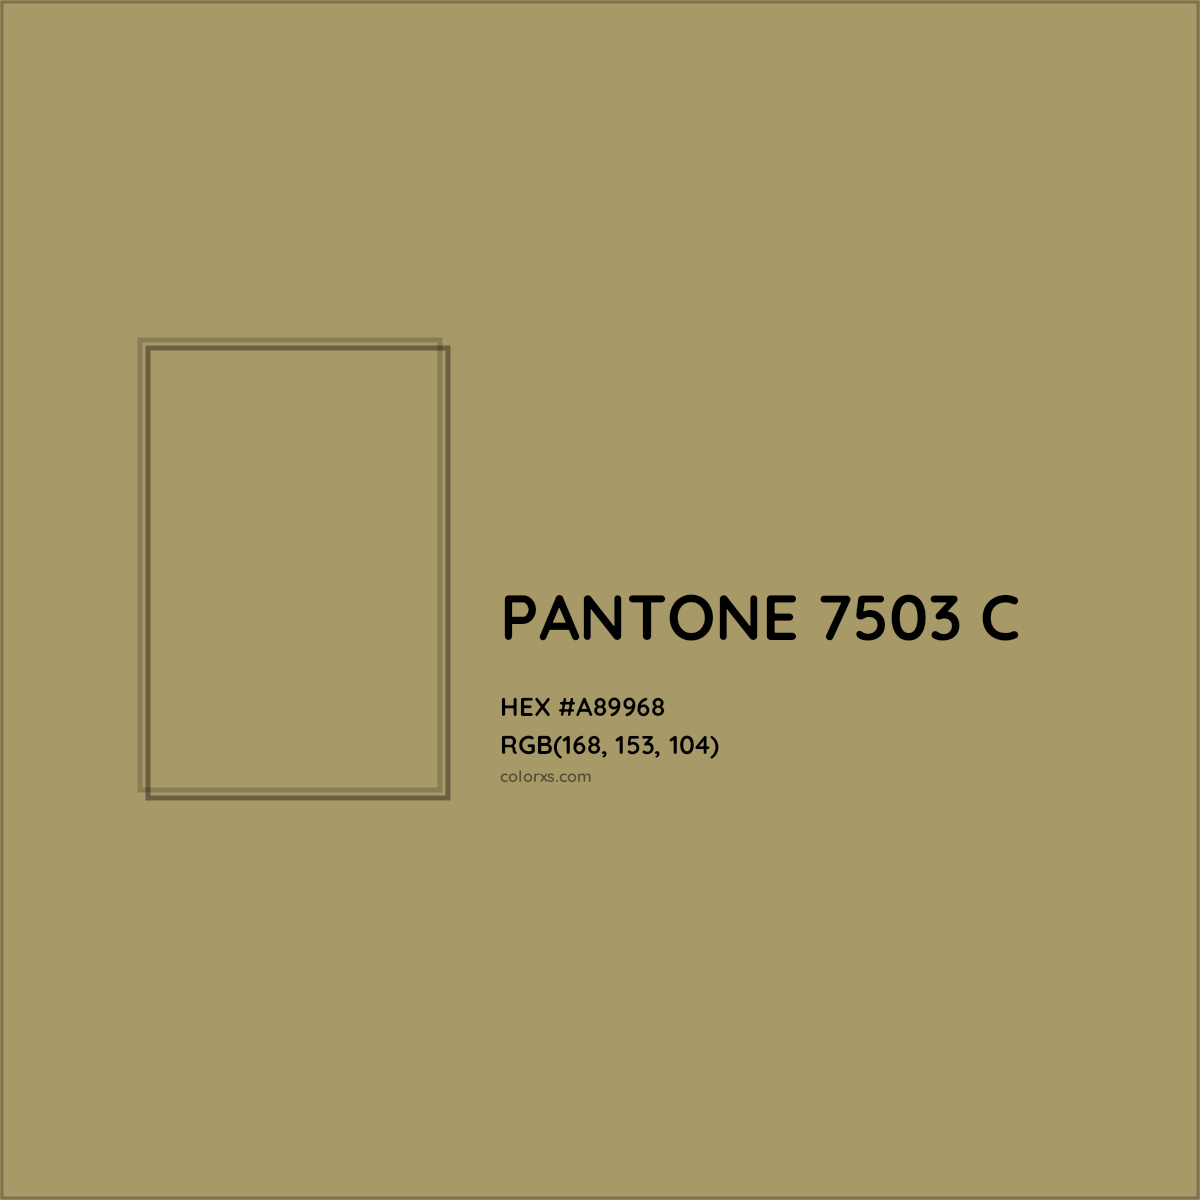 HEX #A89968 PANTONE 7503 C CMS Pantone PMS - Color Code